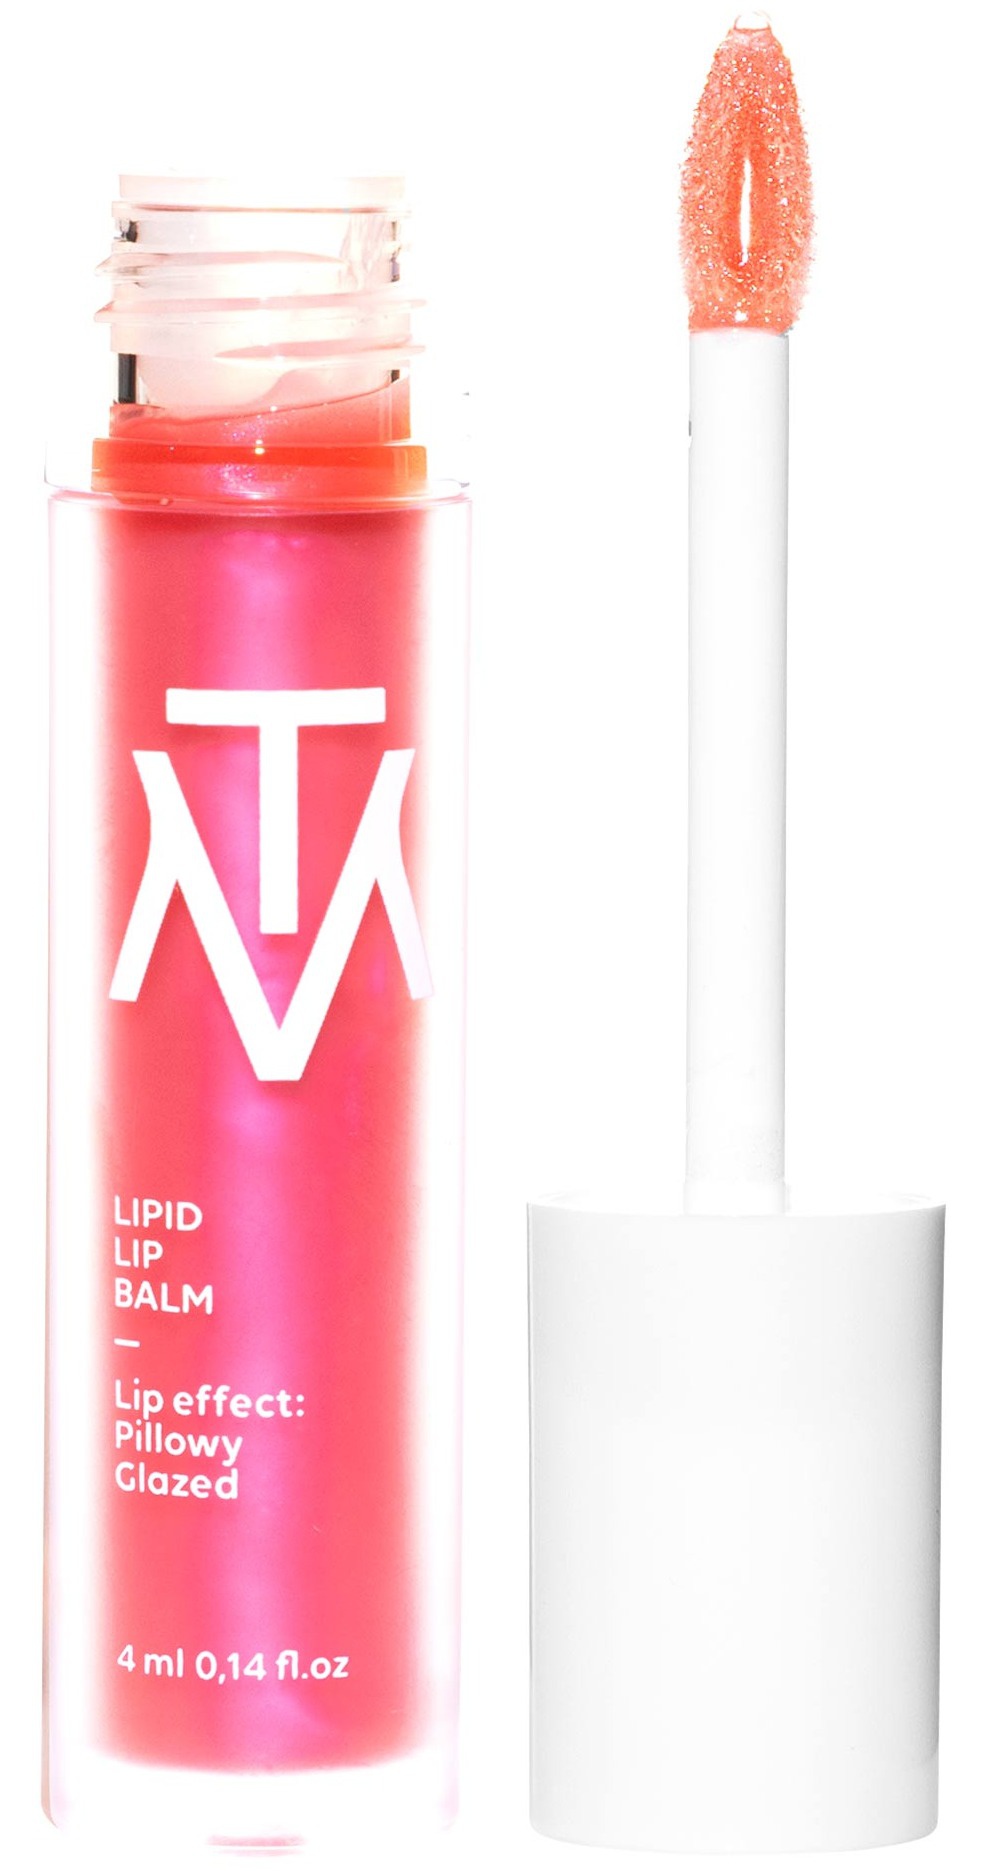 Makethemake Lipid Lip Balm ingredients (Explained)